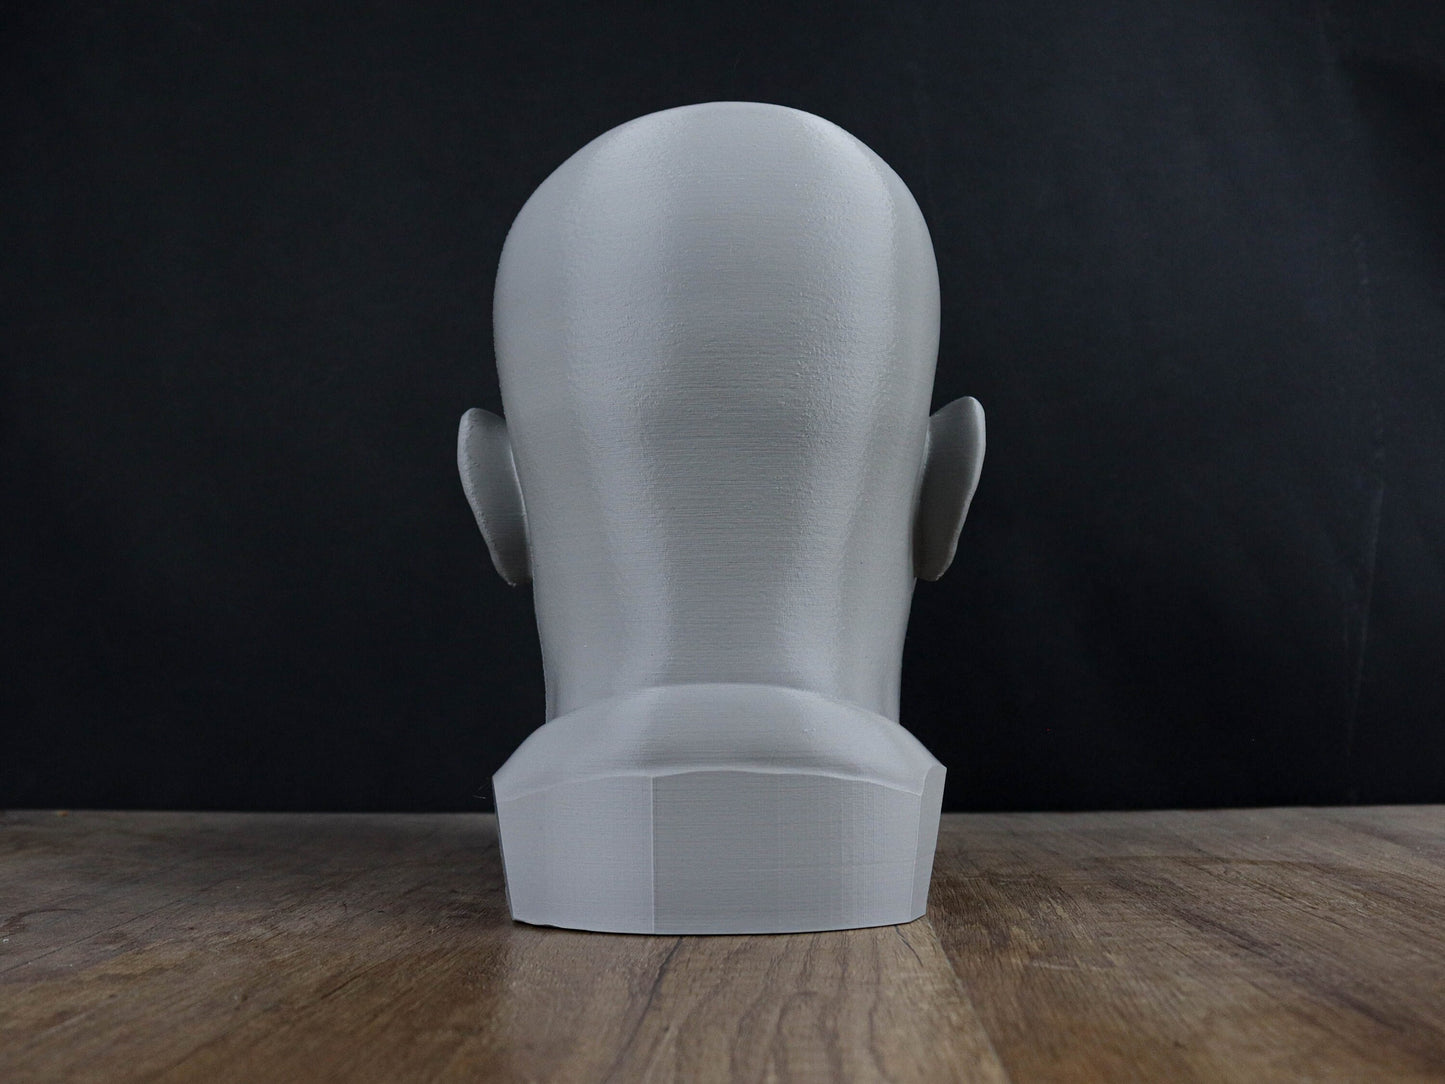 Samuel L Jackson 3d Bust, Headphone Holder Sculpture